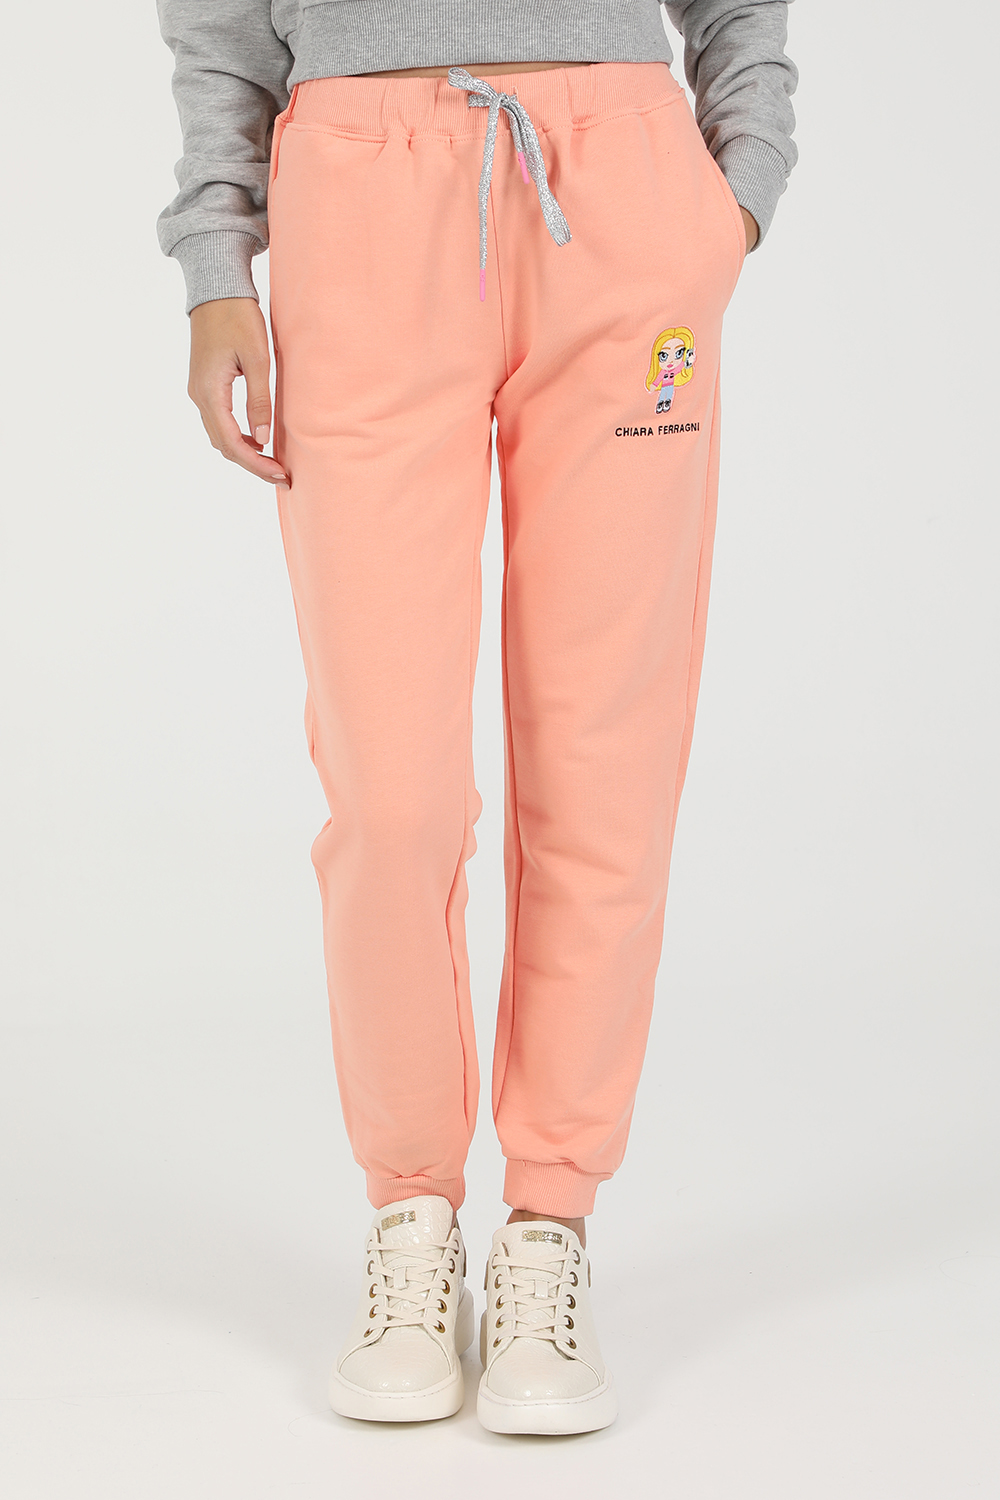 Γυναικεία/Ρούχα/Παντελόνια/Φόρμες CHIARRA FERRAGNI - Γυναικείο παντελόνι φόρμας CHIARRA FERRAGNI MASCOTTE PANT ροζ